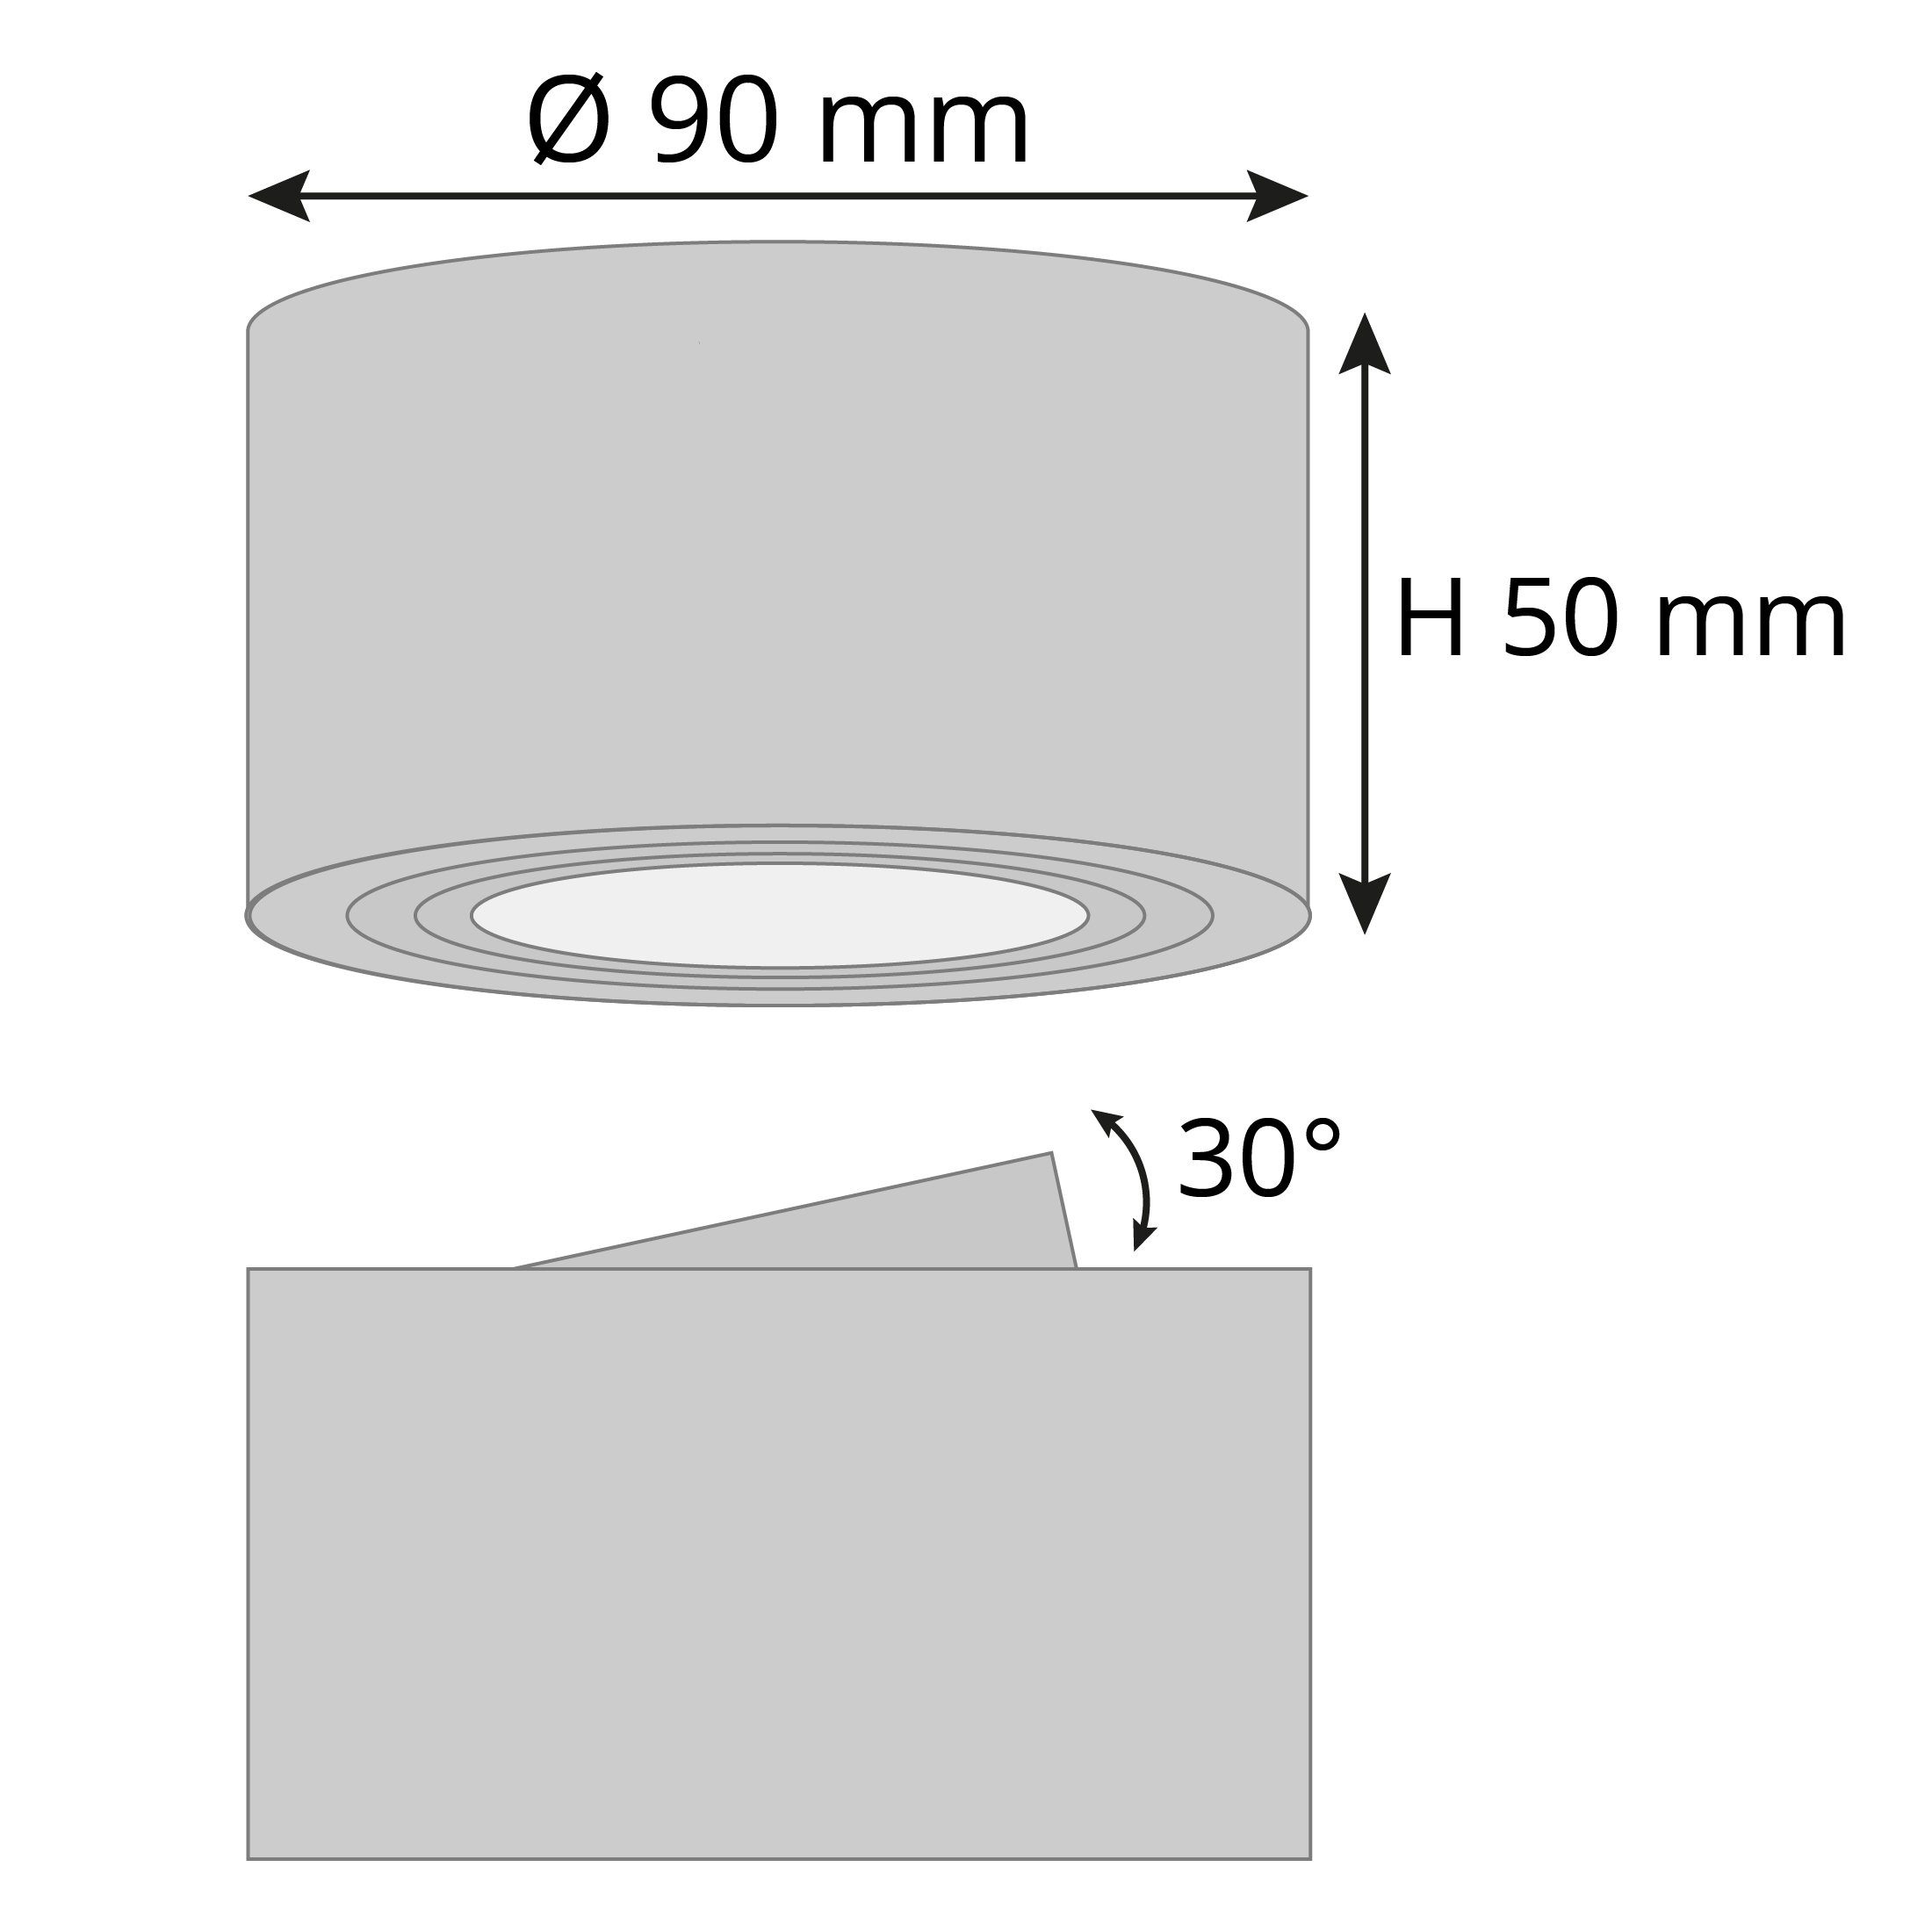 schwenkbar SSC-LUXon dimmbarer Flacher Deckenspot Warmweiß Alu Aufbauspot mit LED, Aufbauleuchte